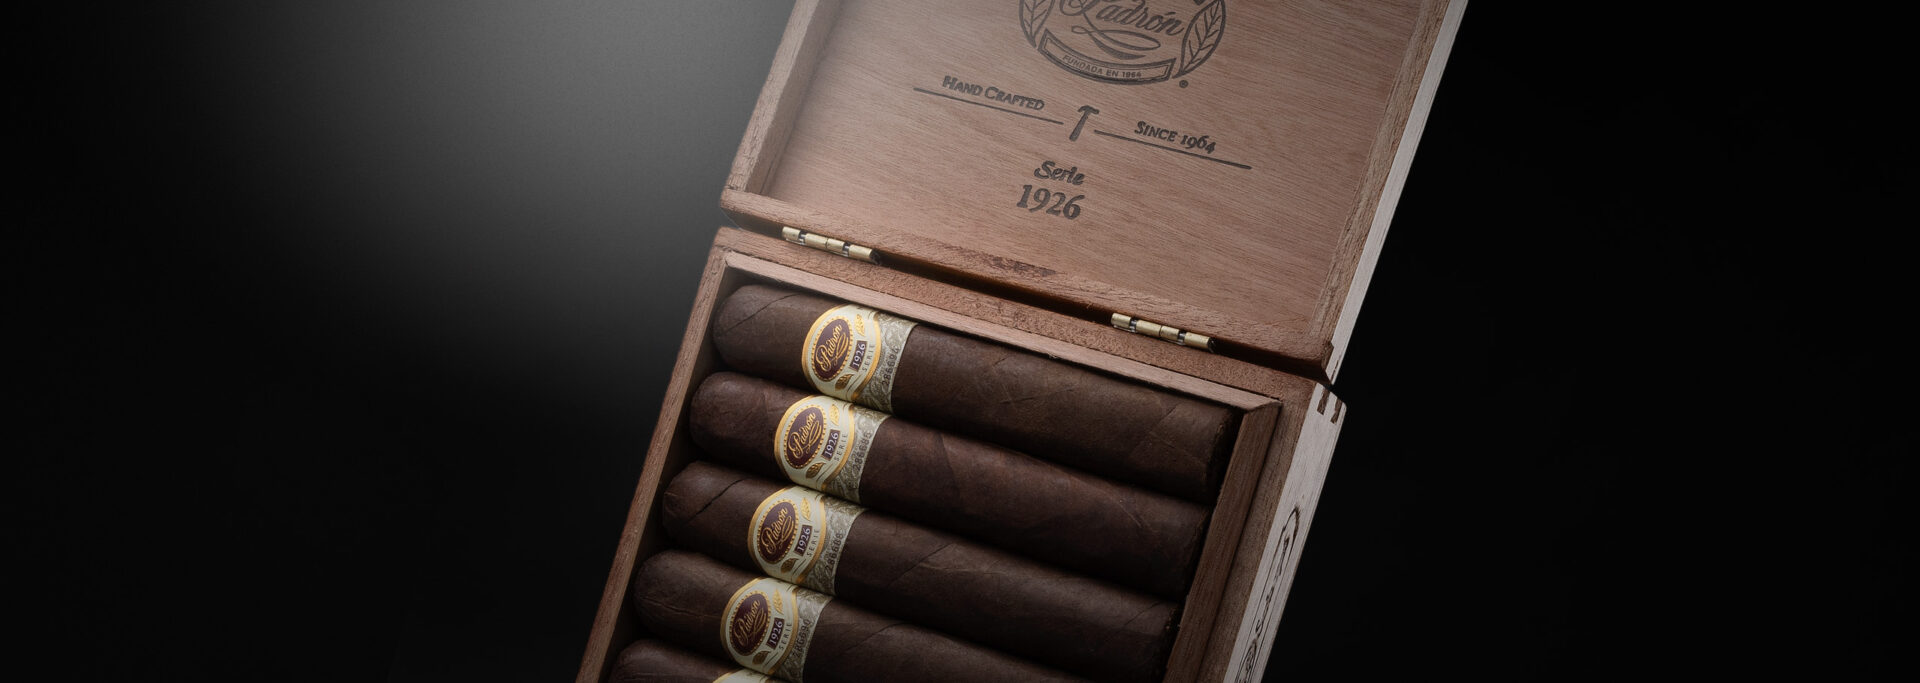 Padron cigars 1926 aniversario, 1964 anniversary and rare Padron cigars